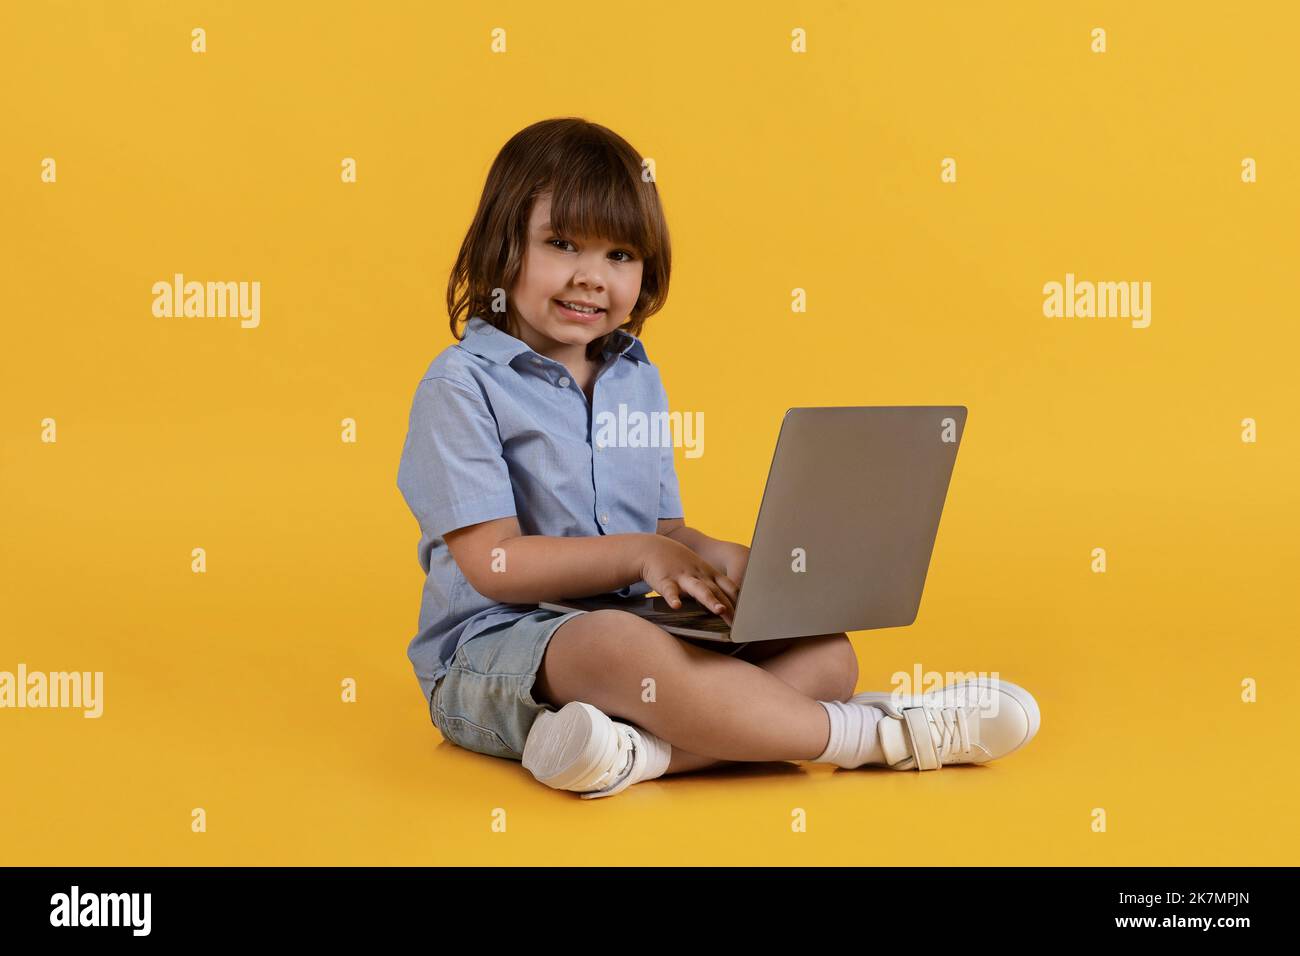 Adorable niño escribiendo en el portátil, disfrutando de la educación en línea, sentado en el suelo y sonriendo a la cámara, espacio libre Foto de stock